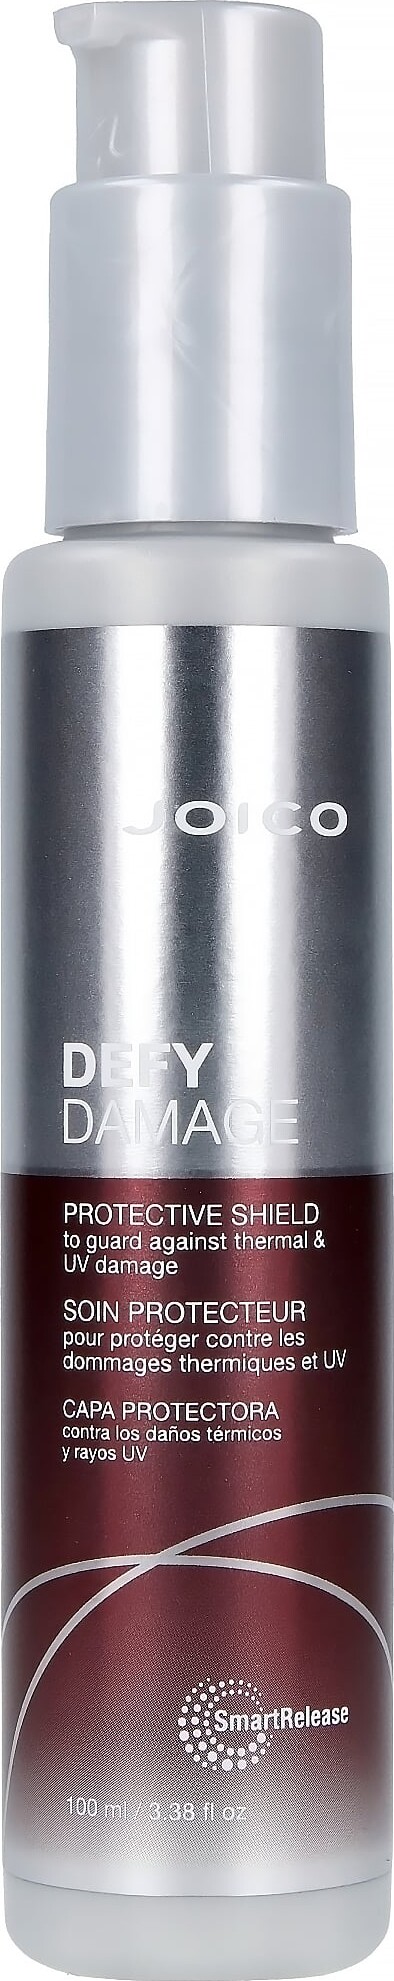 Se Joico - Defy Damage Protective Shield 100 Ml hos Gucca.dk